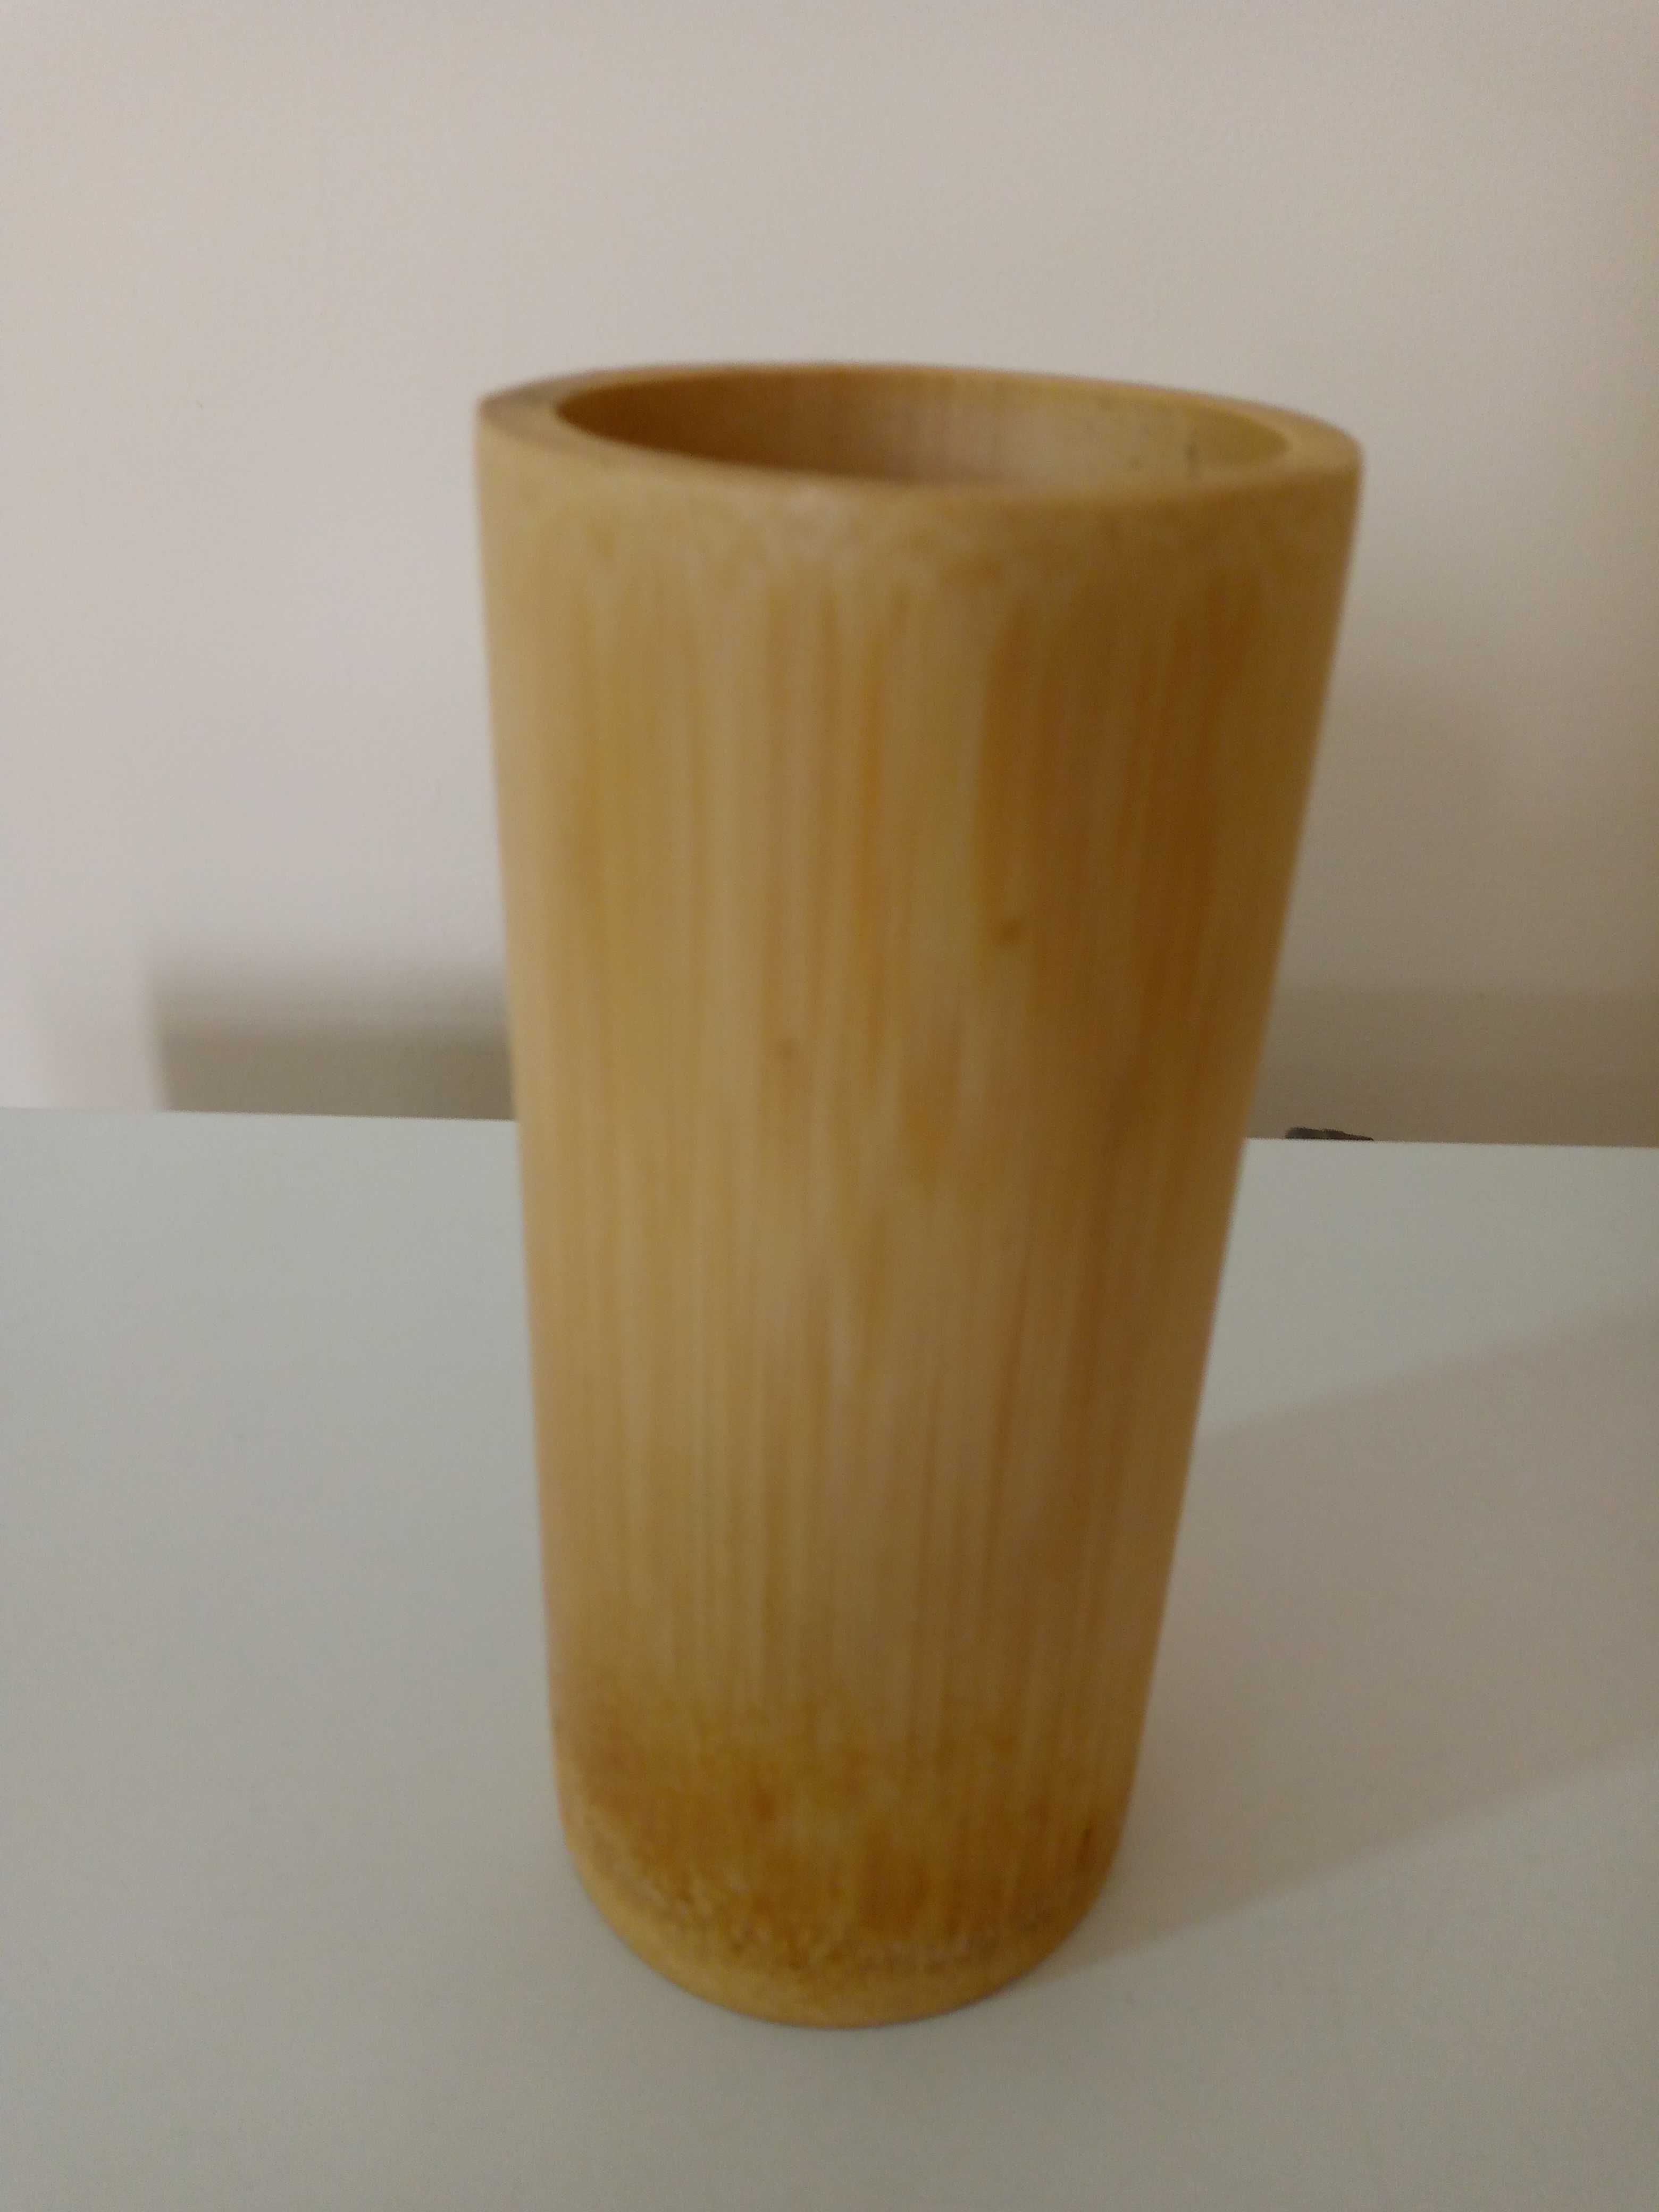 Деревянная ваза стакан для аксессуаров.Цена 25 тысяч сумов